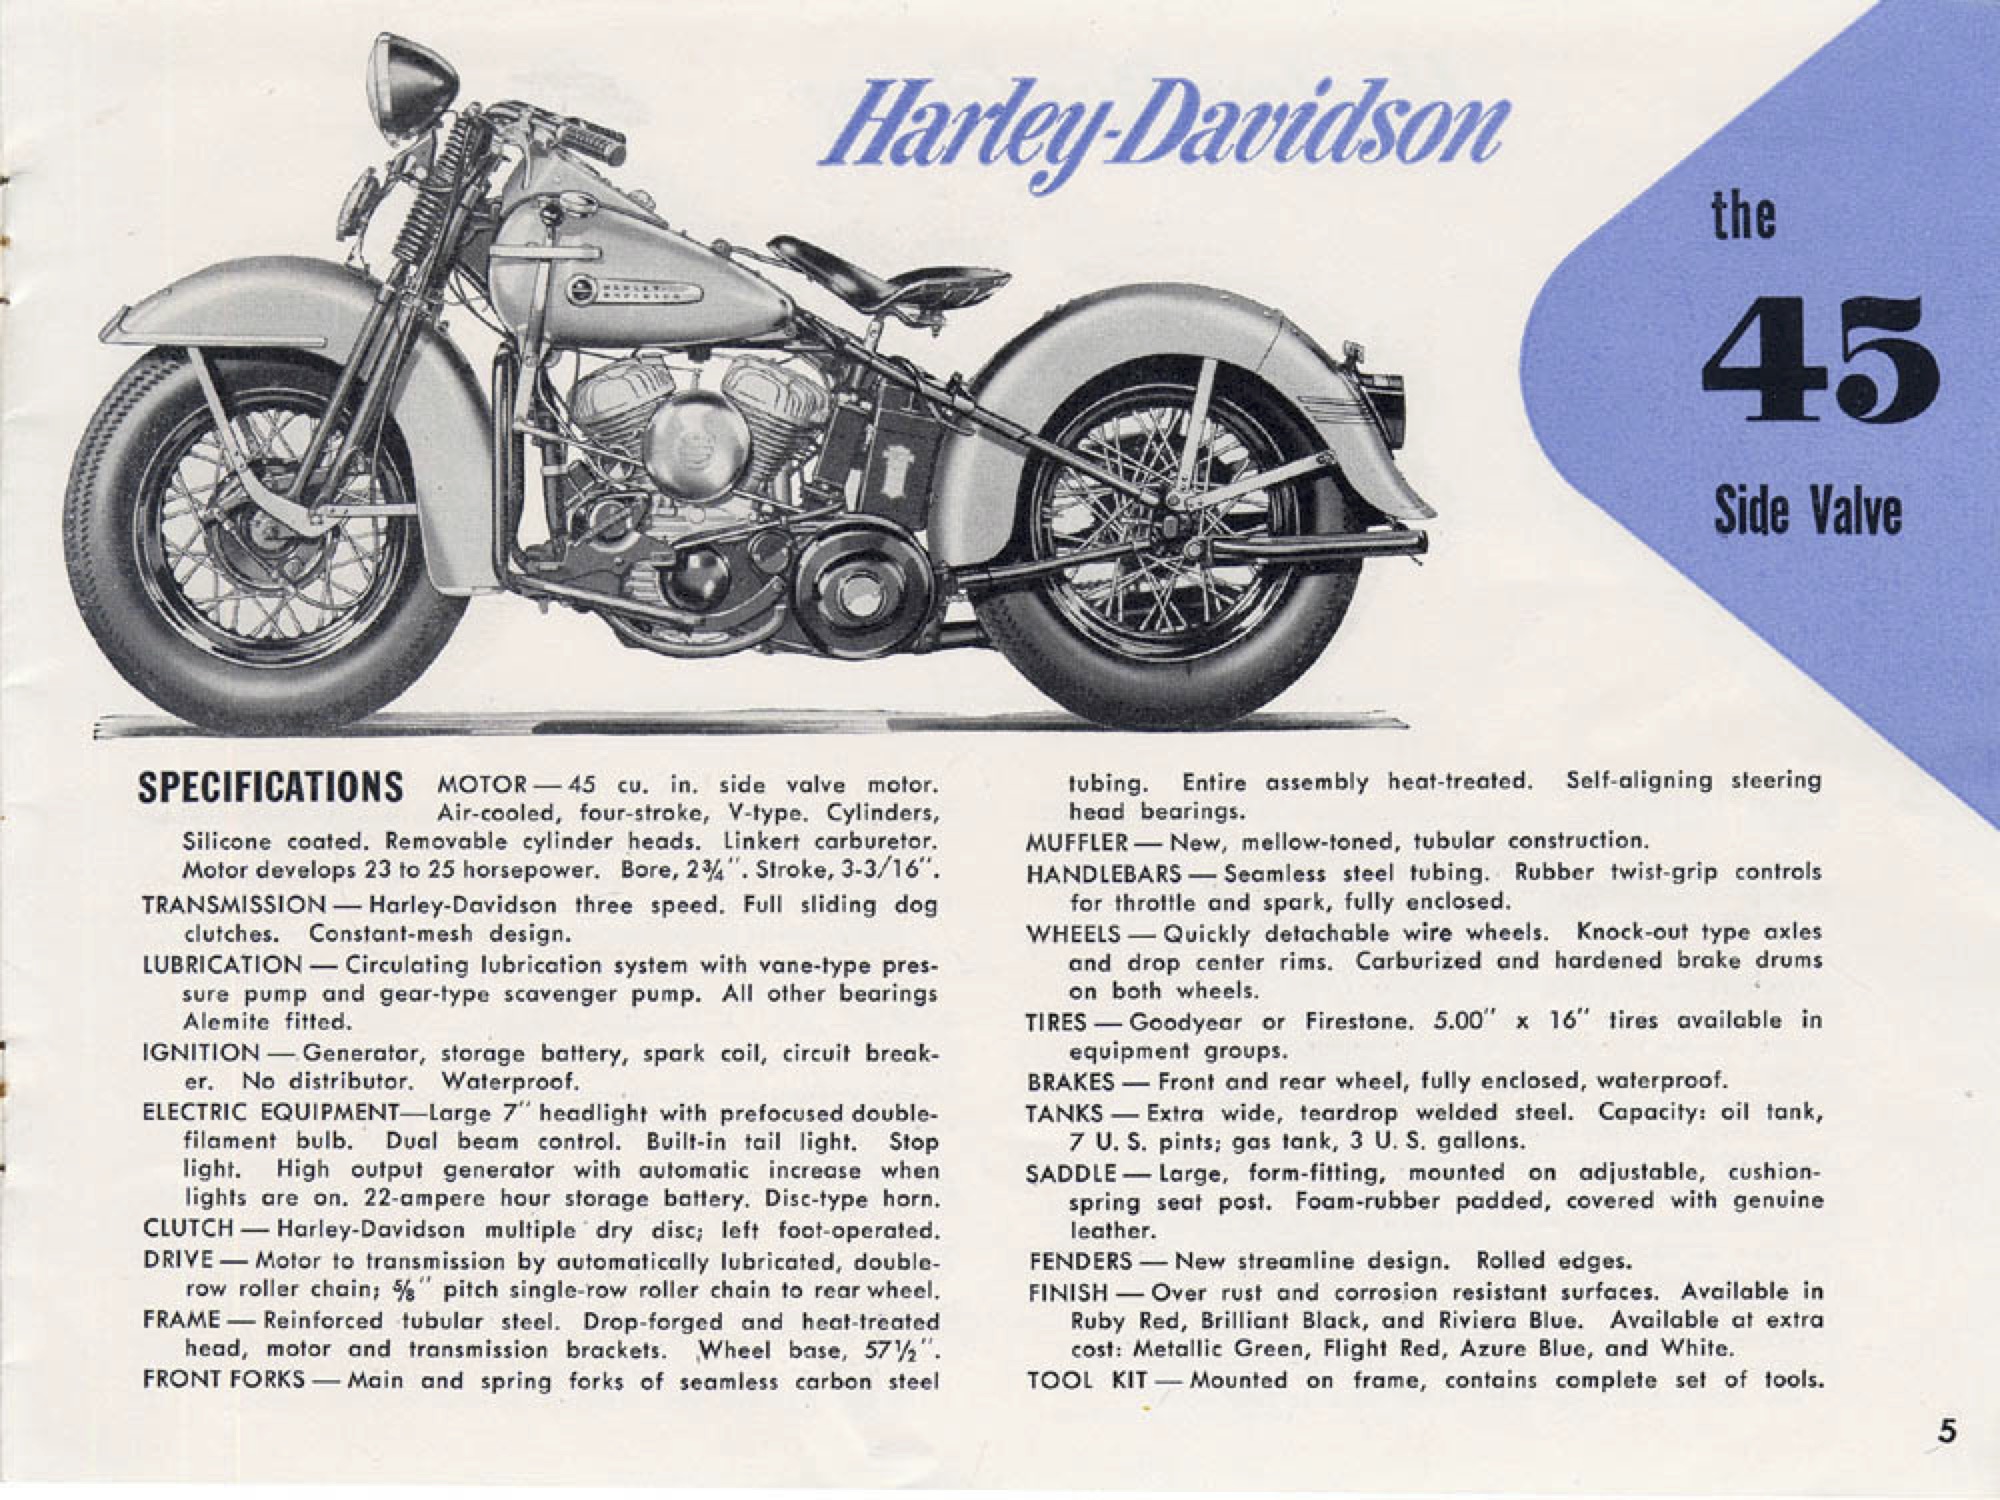 1950 - Harley-Davidson folleto de ventas